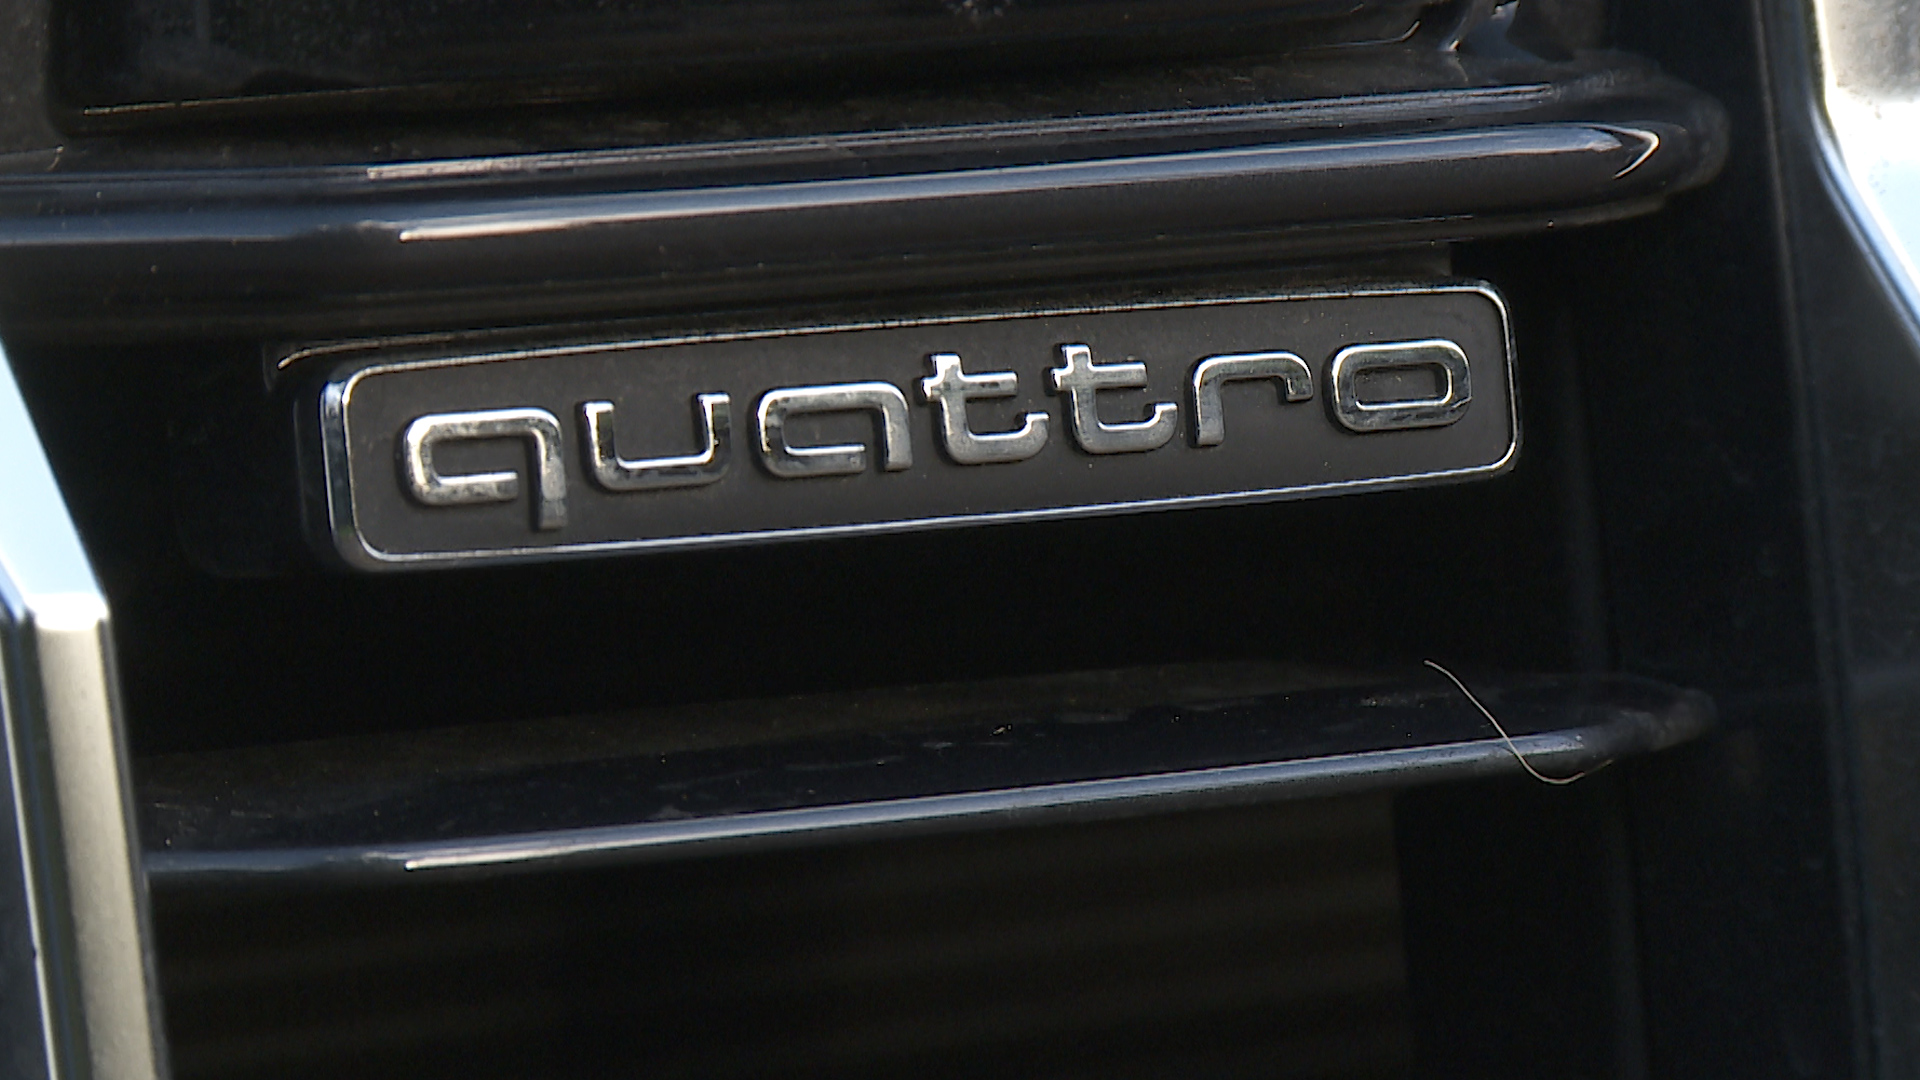 AUDI Q7 ESTATE 55 TFSI Quattro Black Ed 5dr Tiptronic [Tech Pro]